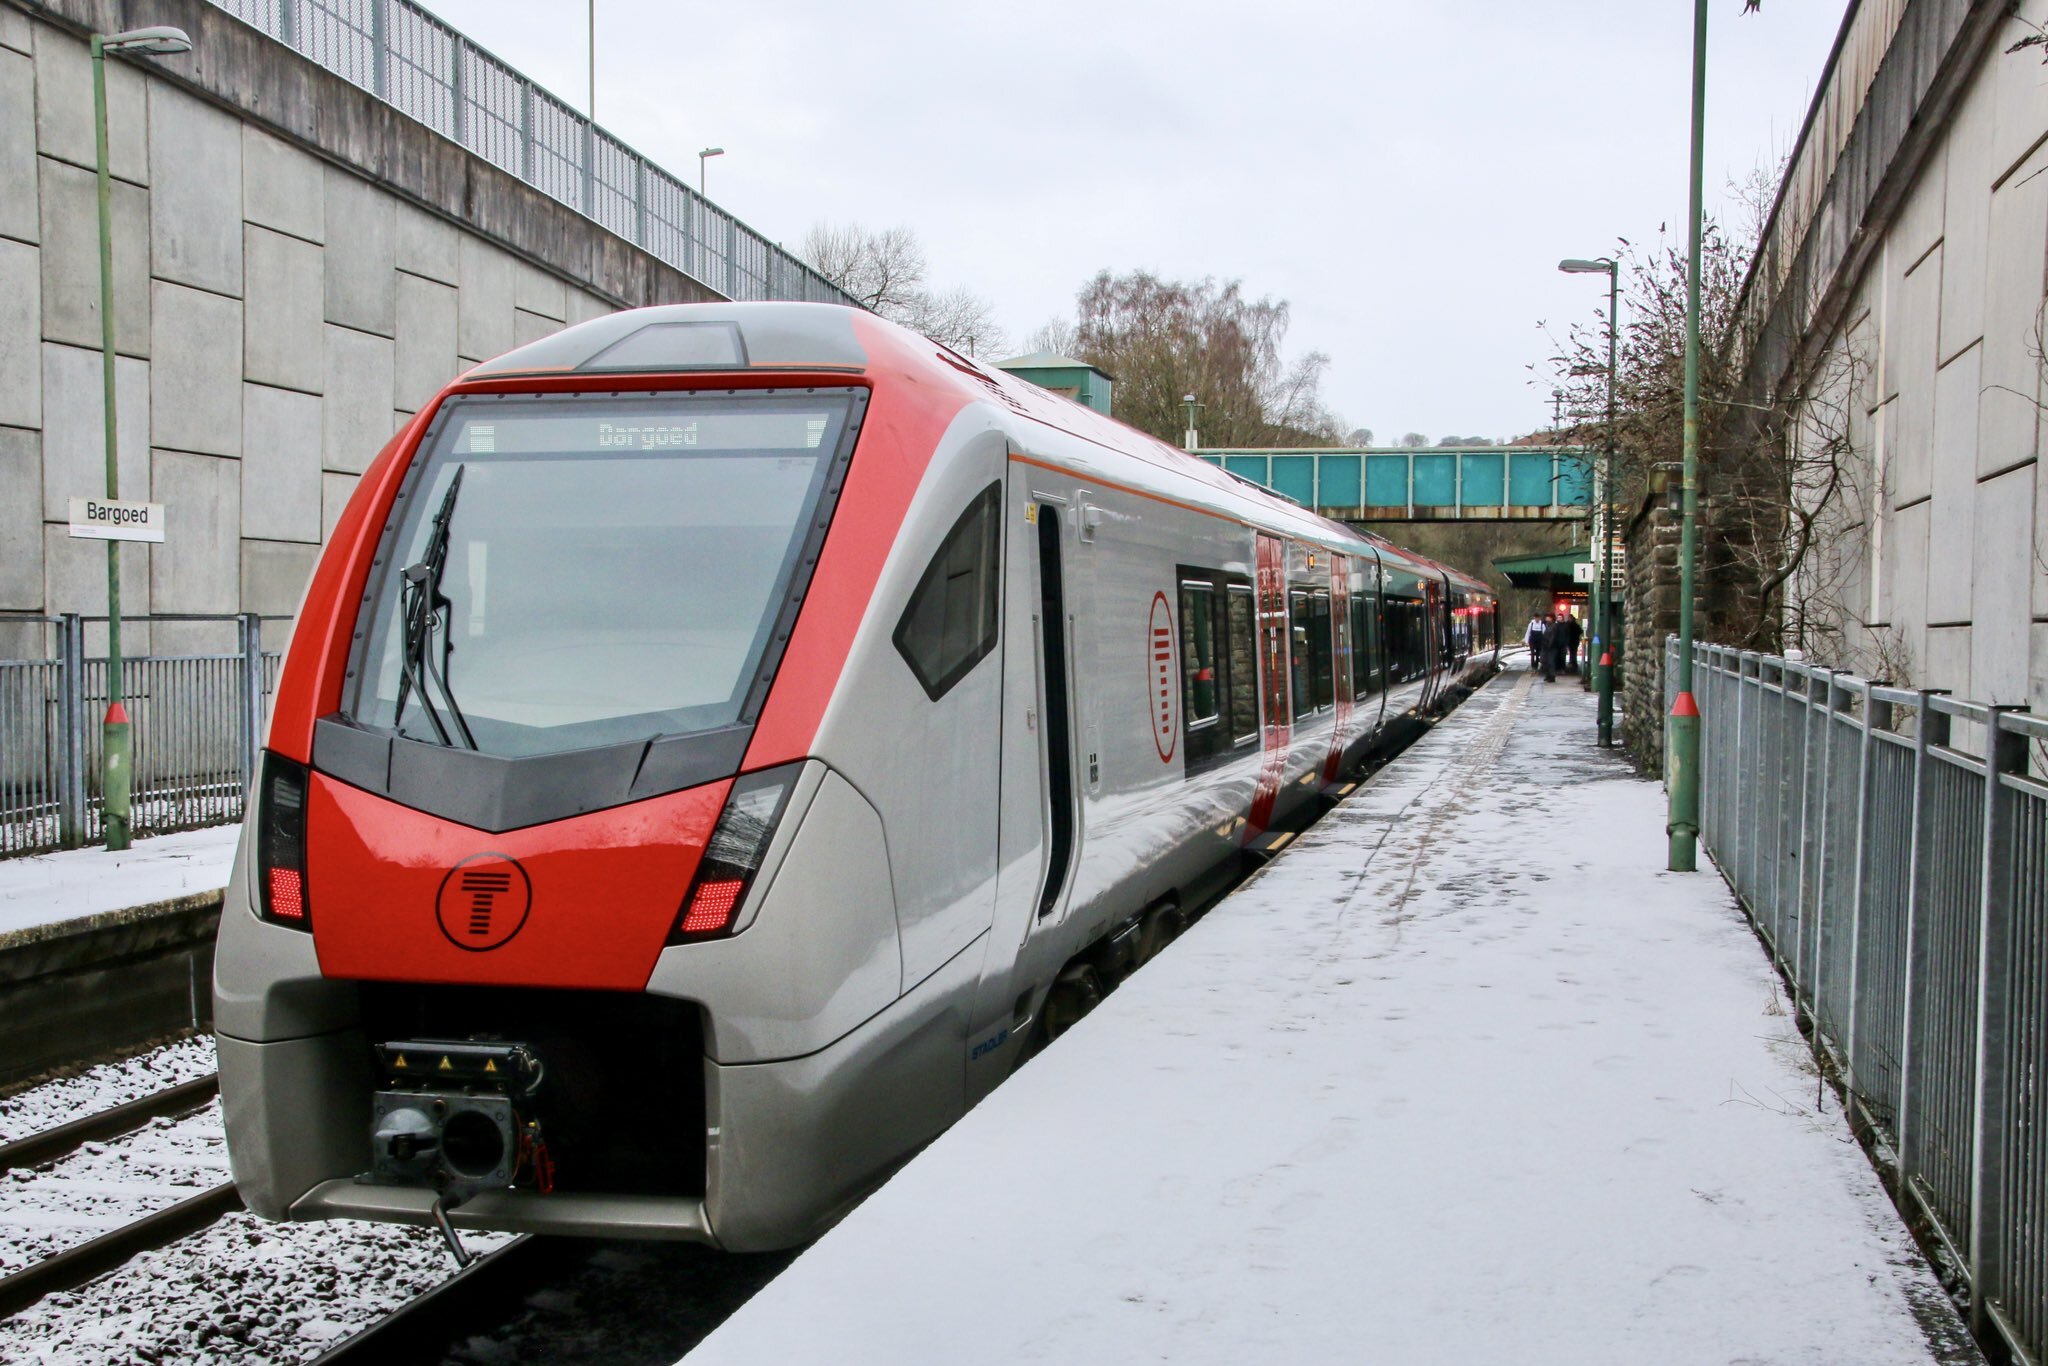 Дизель-поезд FLIRT класса 231 в Баргойде.